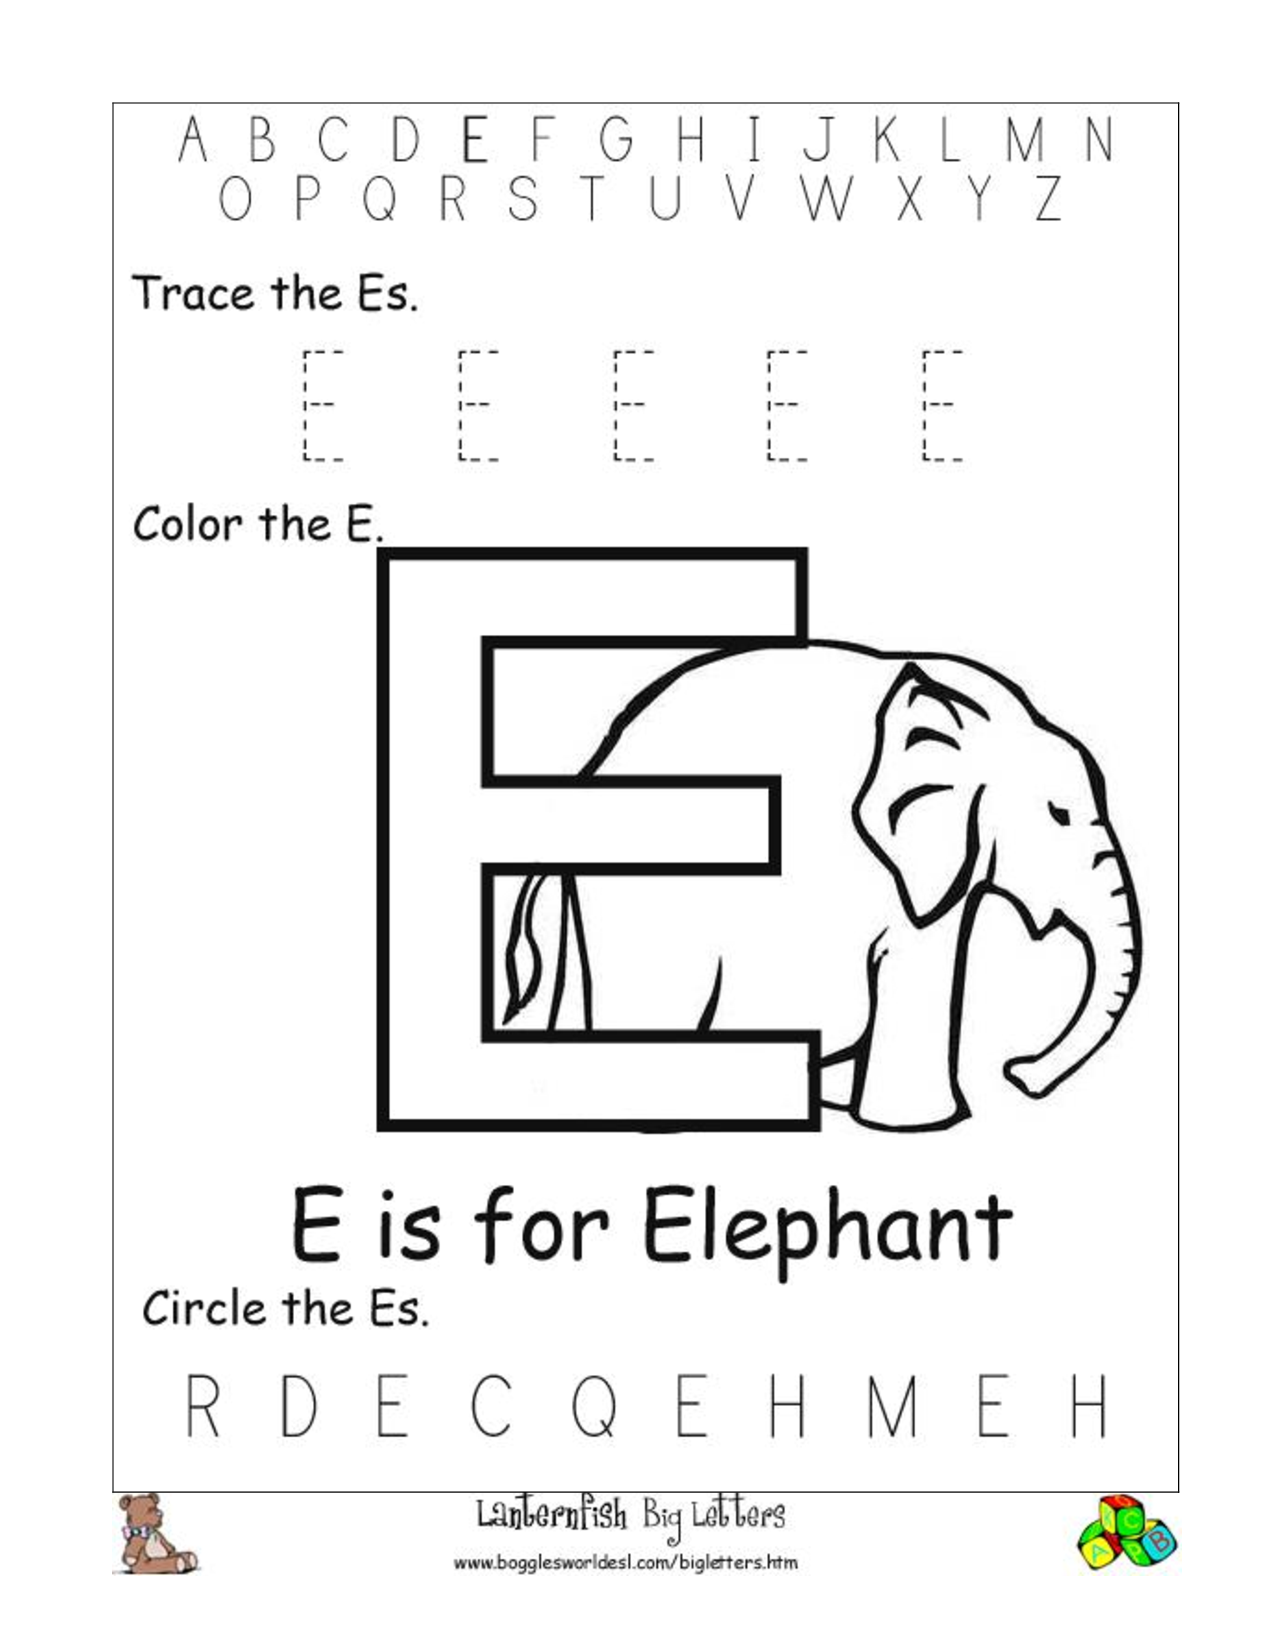 Free Printable Alphabet Letter Worksheets Image